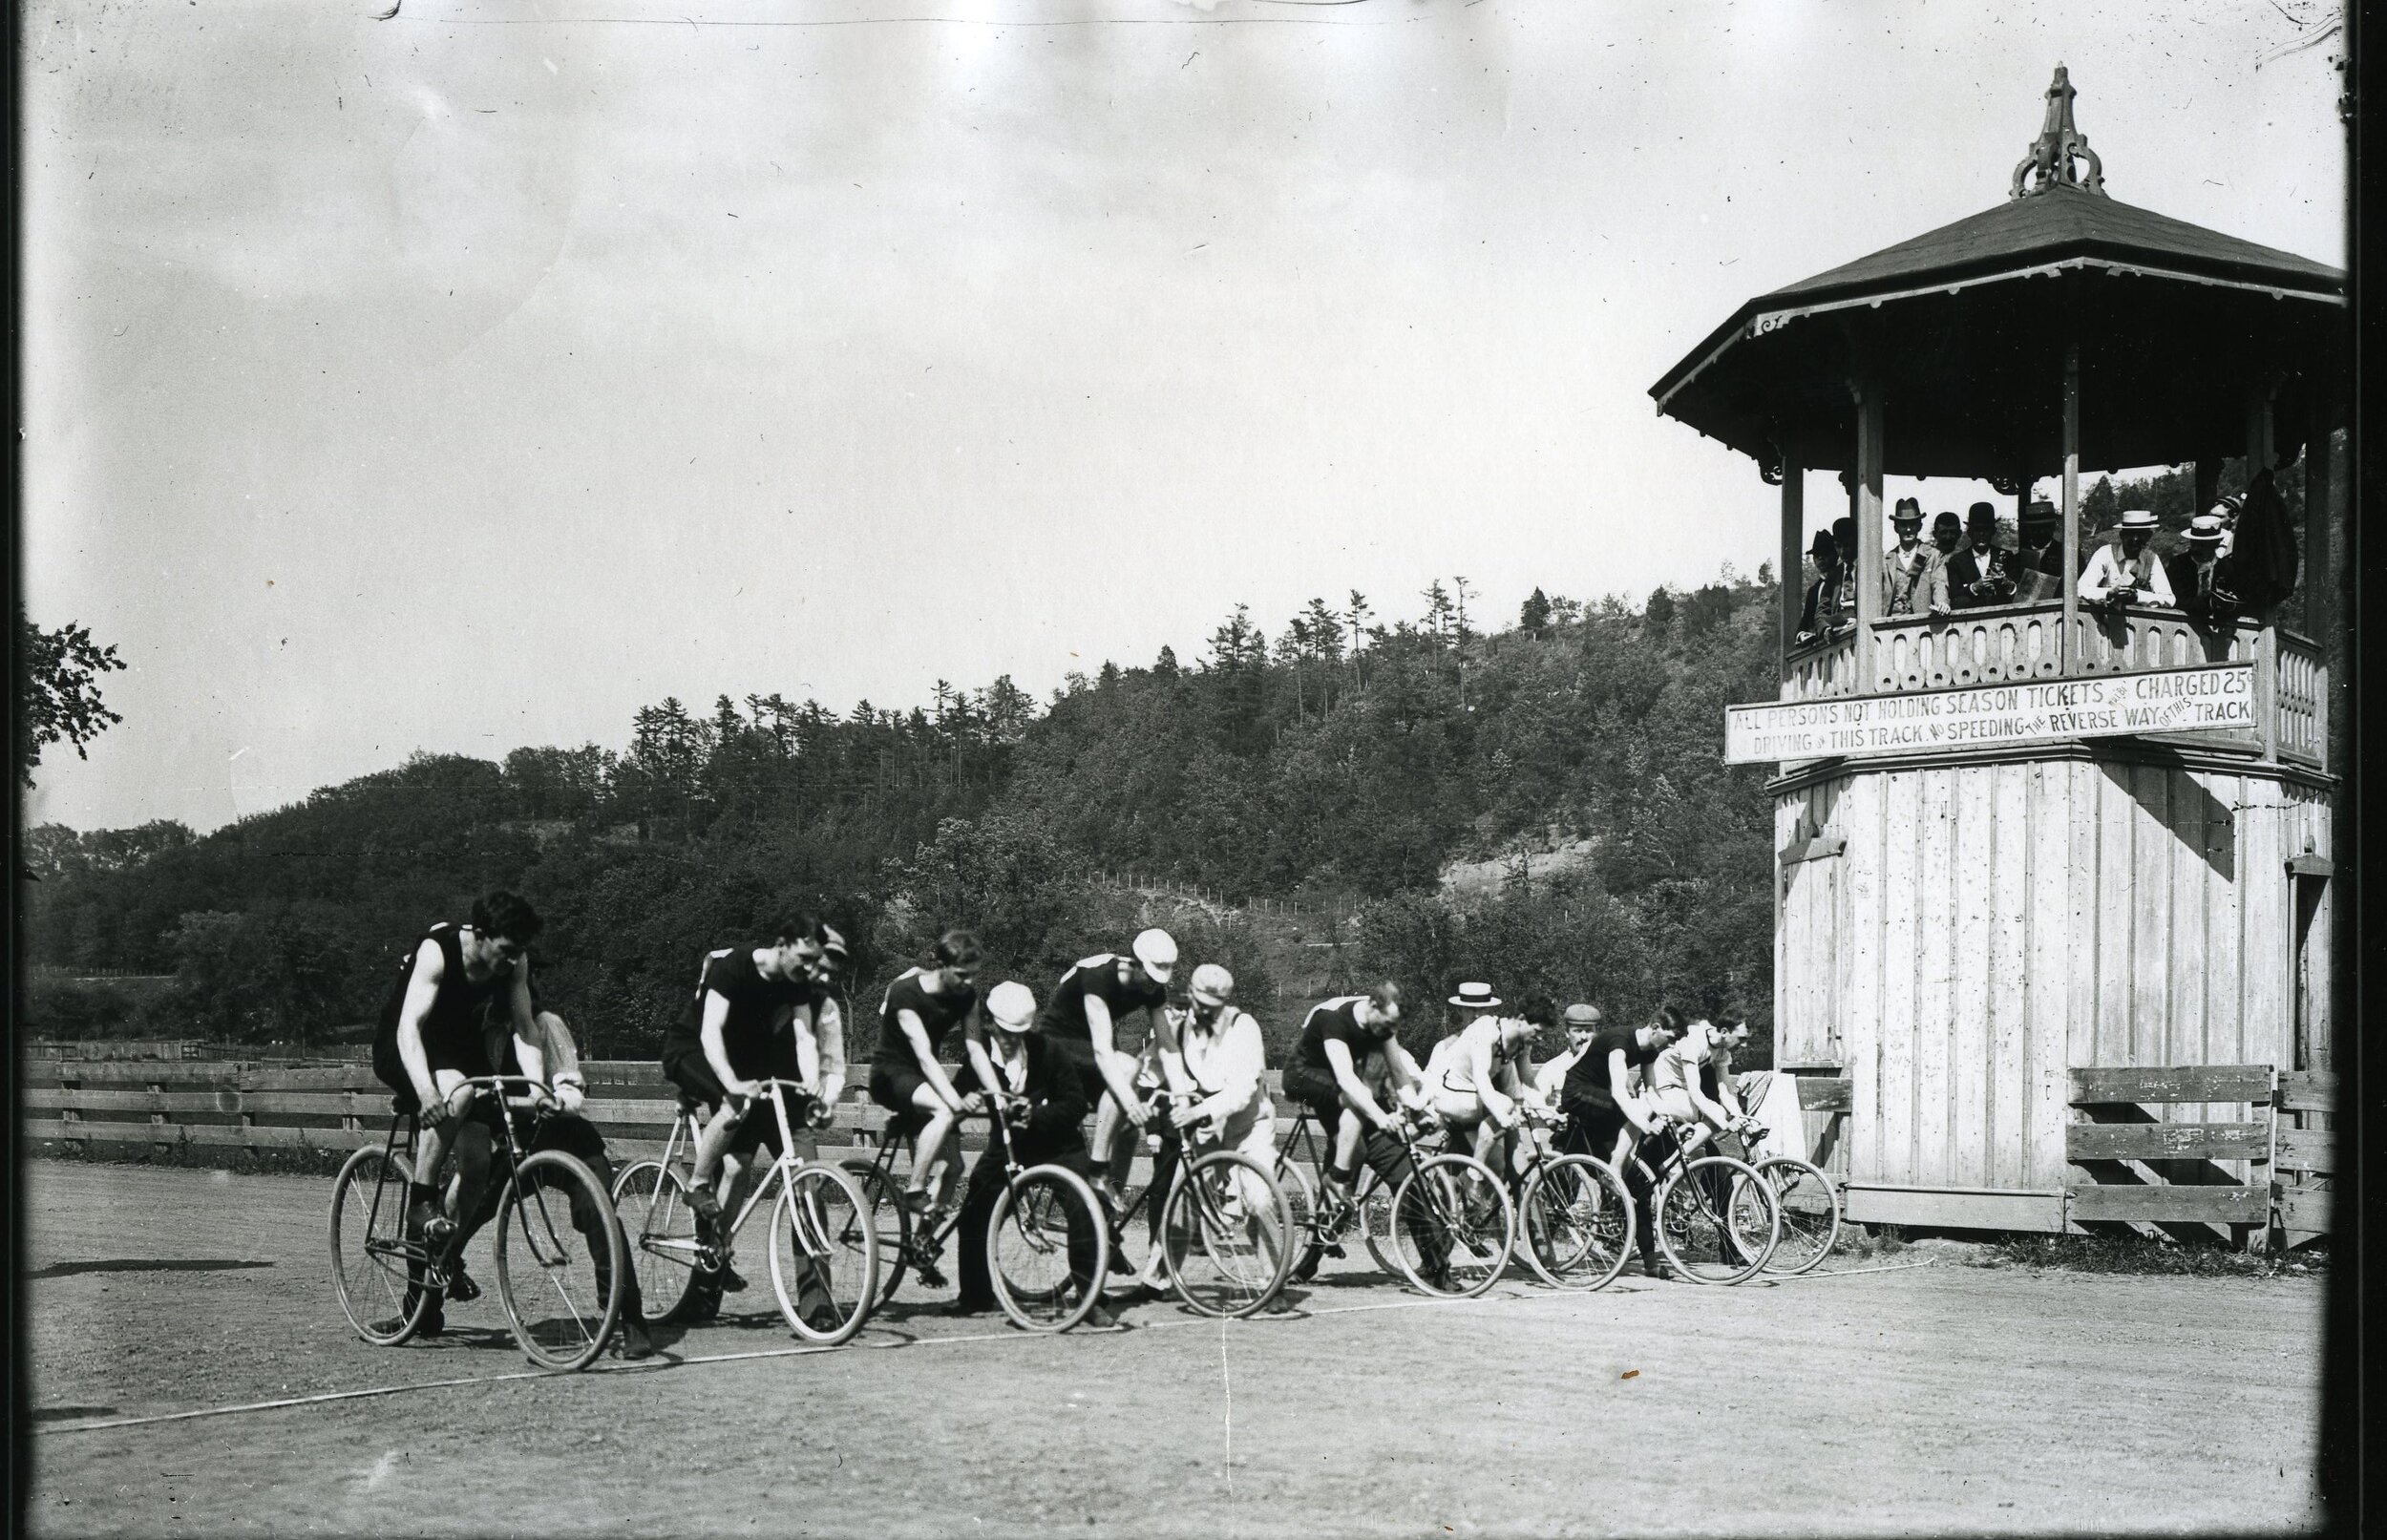 Bike Race in Rensselaer Park